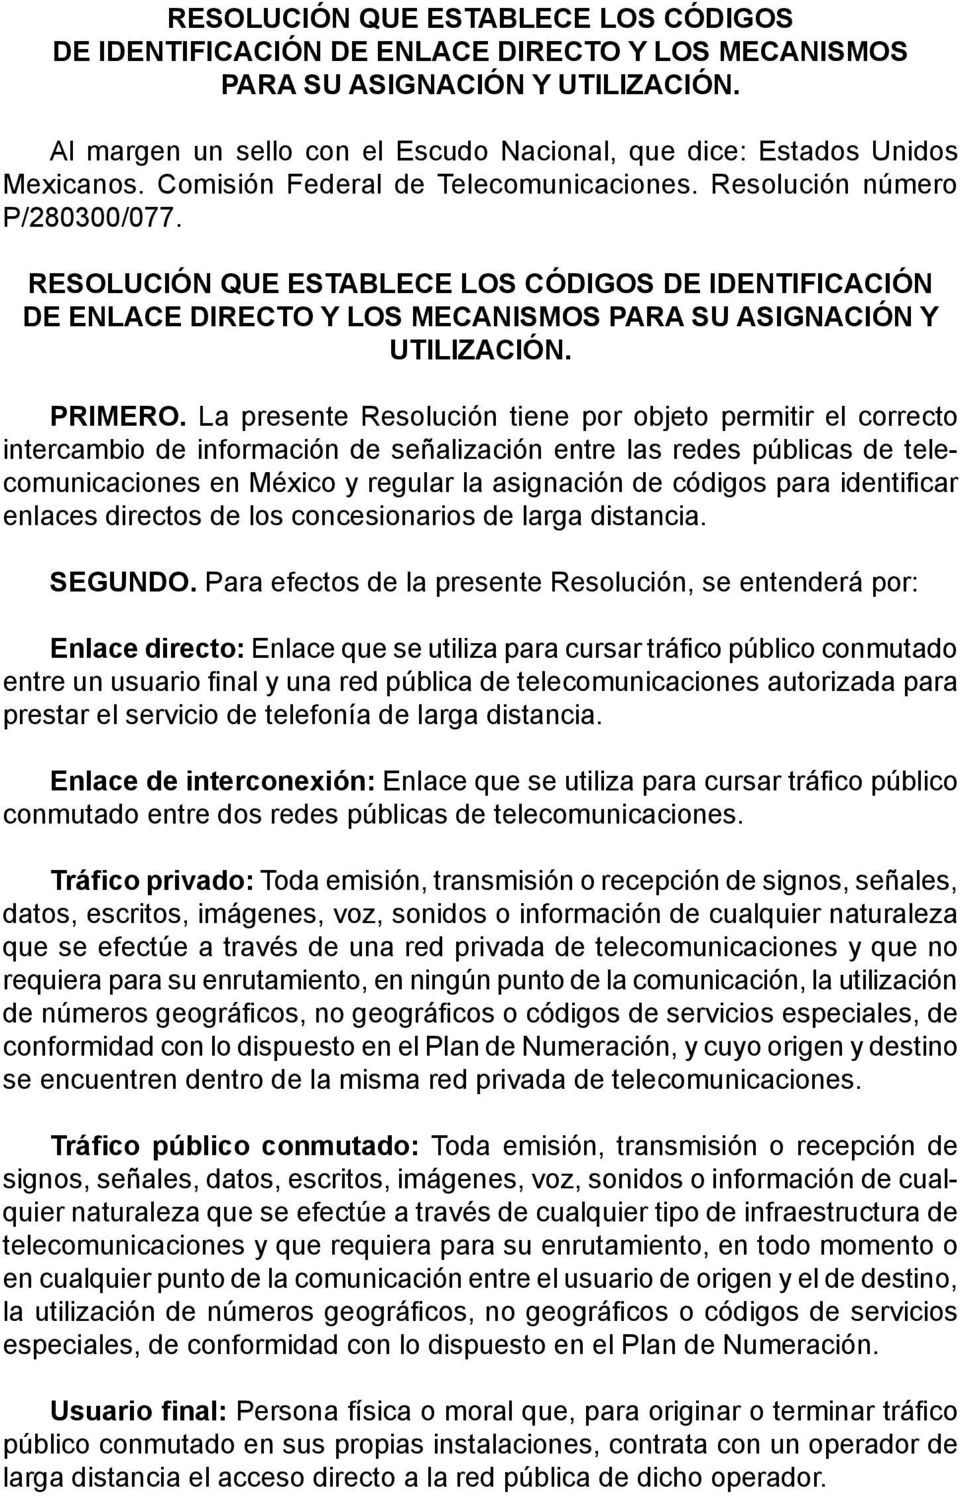 La presente Resolución tiene por objeto permitir el correcto intercambio de información de señalización entre las redes públicas de telecomunicaciones en México y regular la asignación de códigos